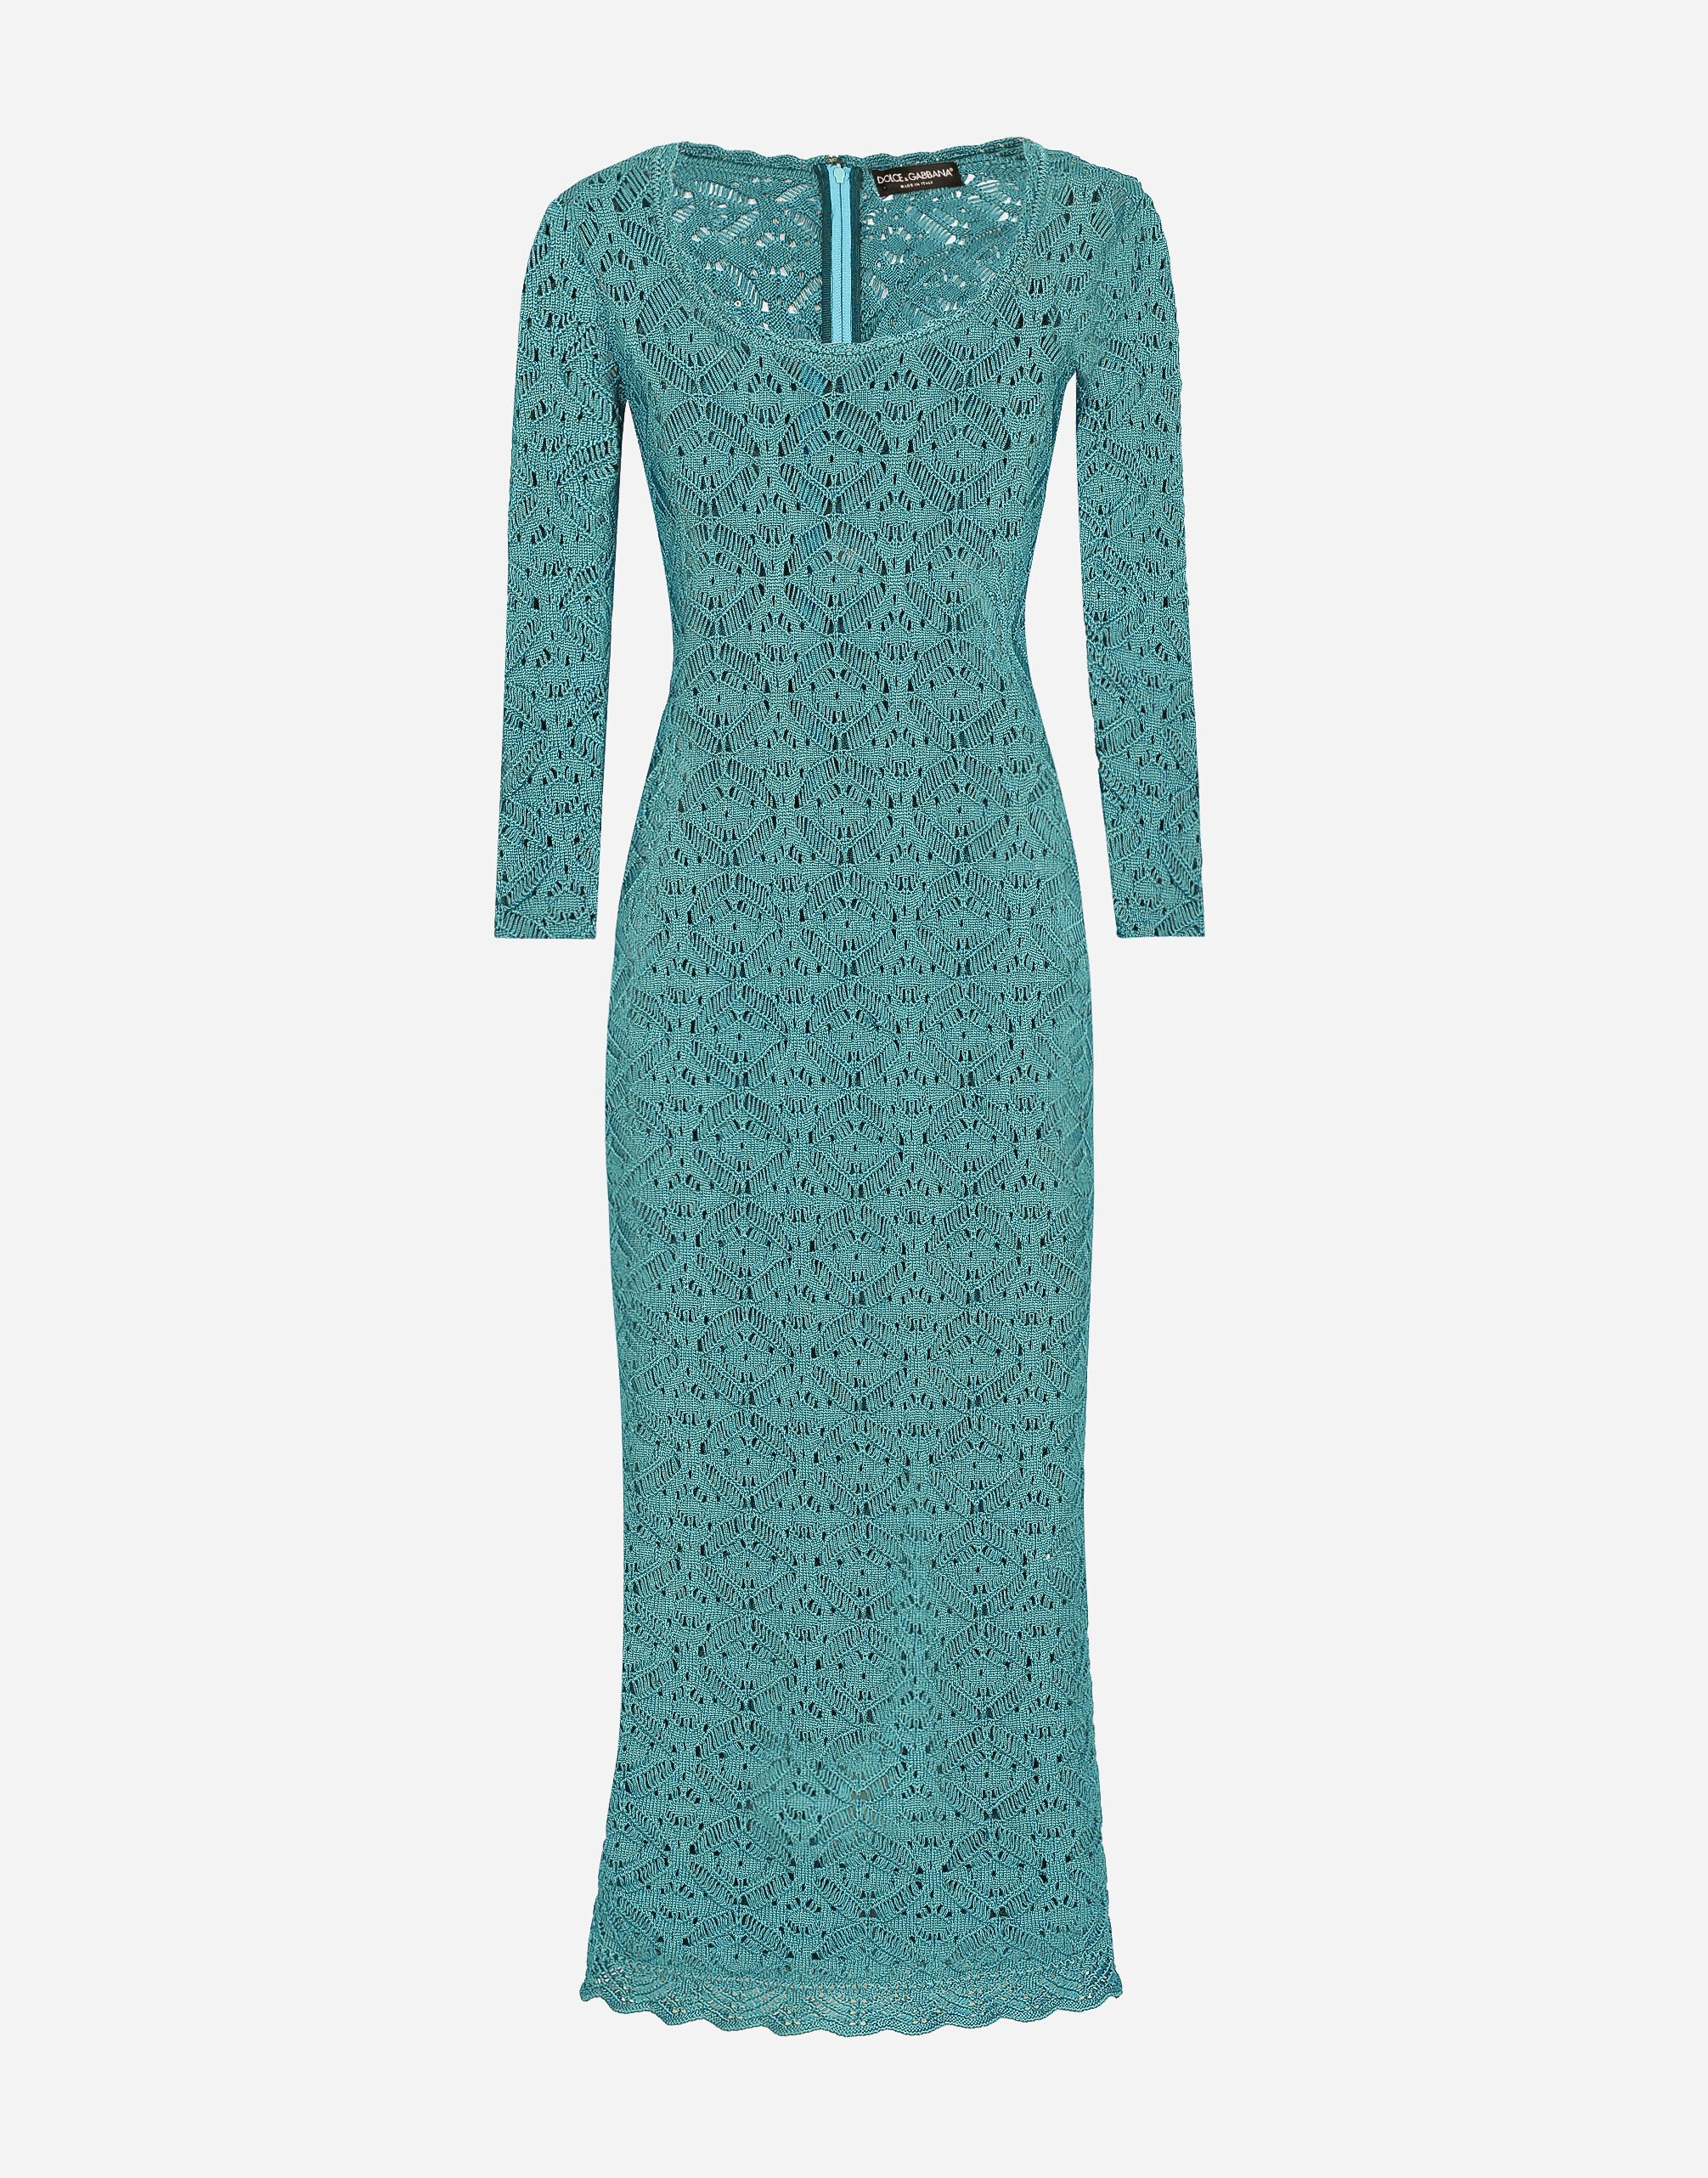 Dolce & Gabbana Crochet calf-length dress Print F6AHOTHS5NK